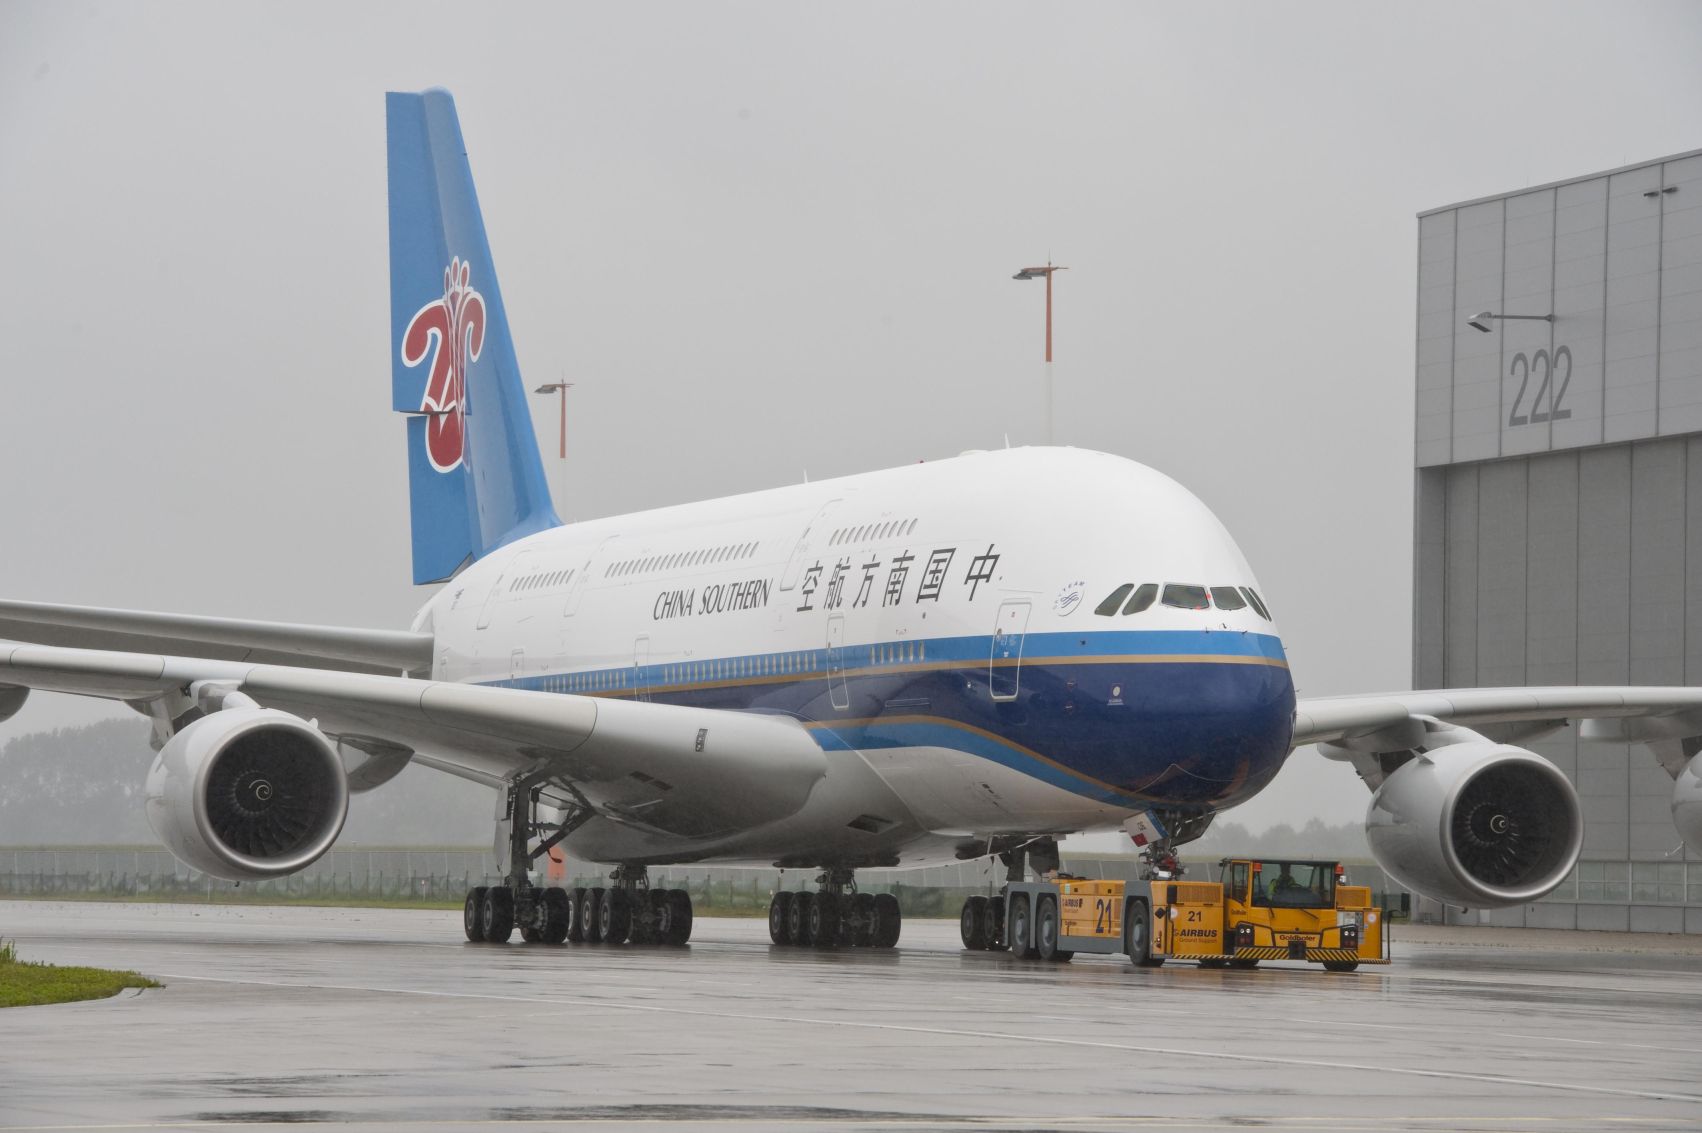 Az utasszállító óriástól az egymotoros magángépig: a repülő szerkezetek száma ugrásszerűen nő és nőni fog Kínában